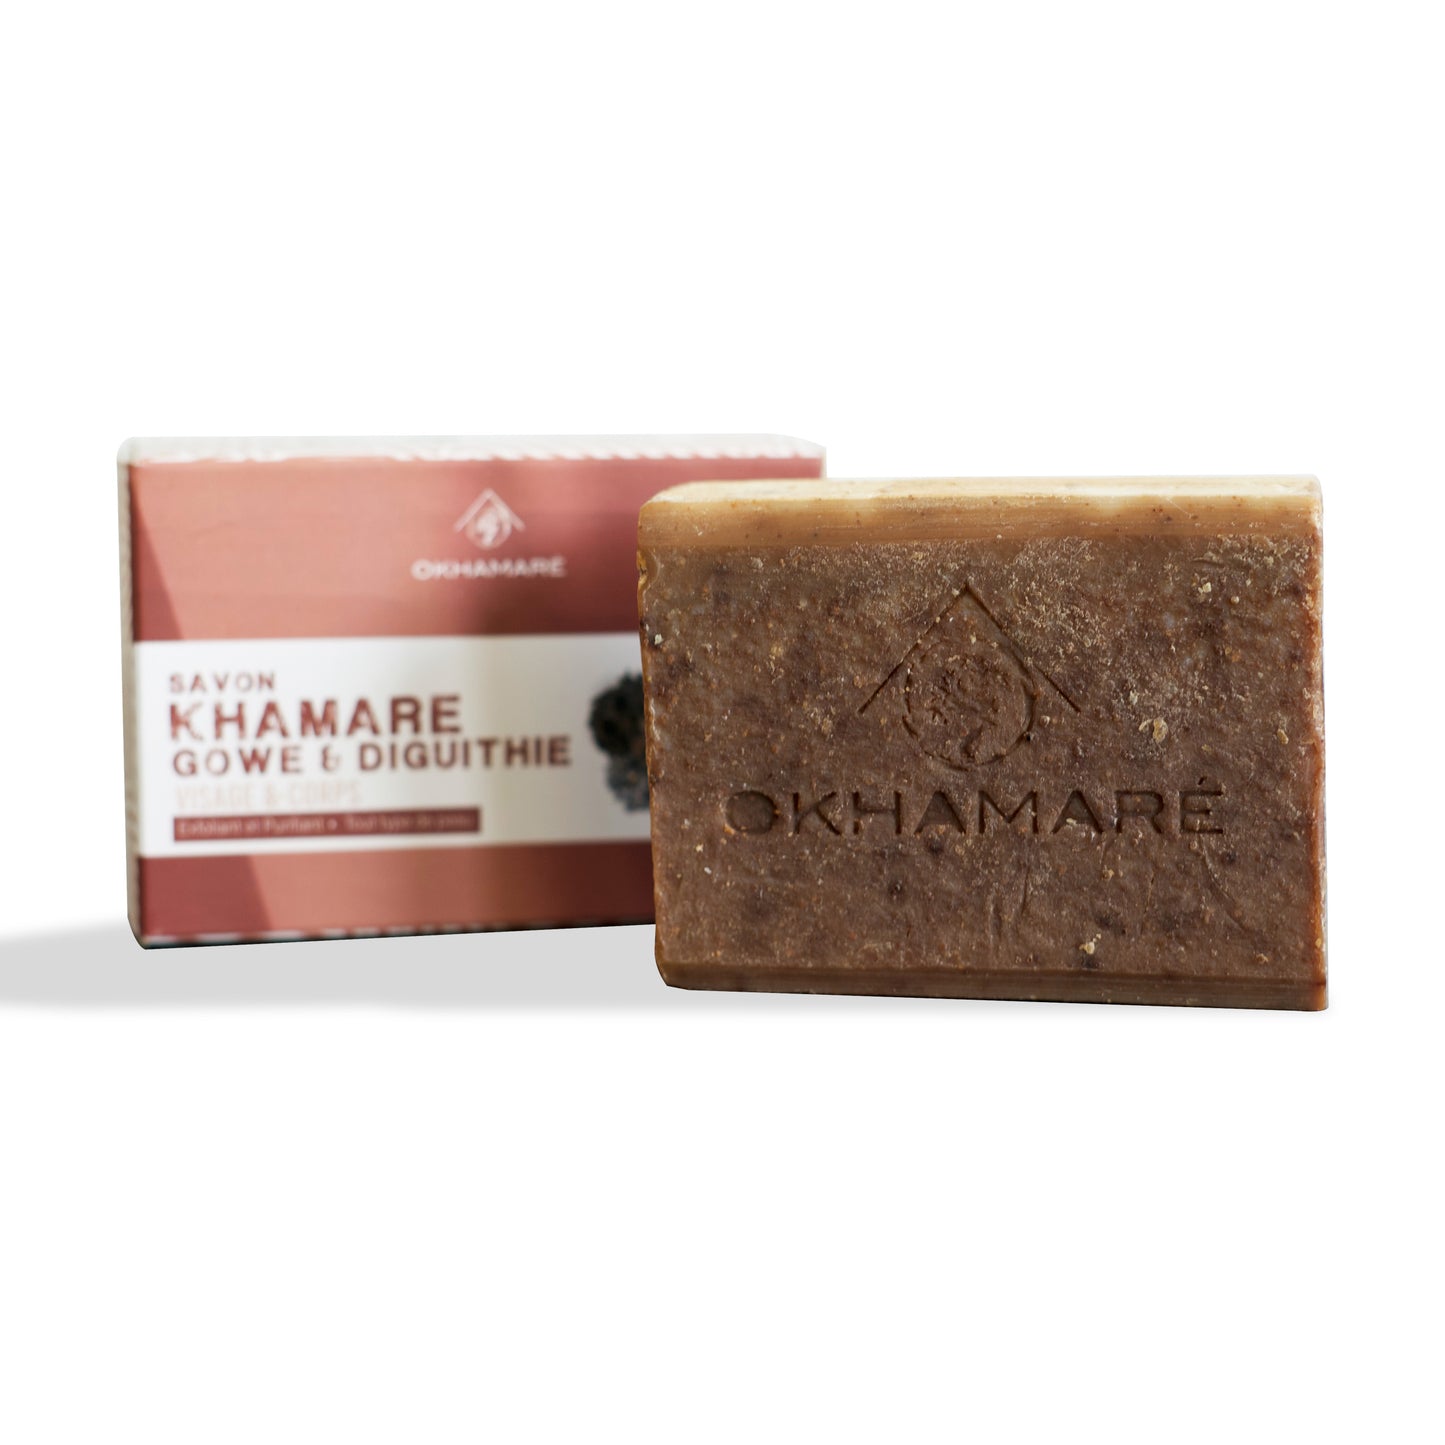 Soap With 3 Plants: Khamaré - Gowé - Diguithié